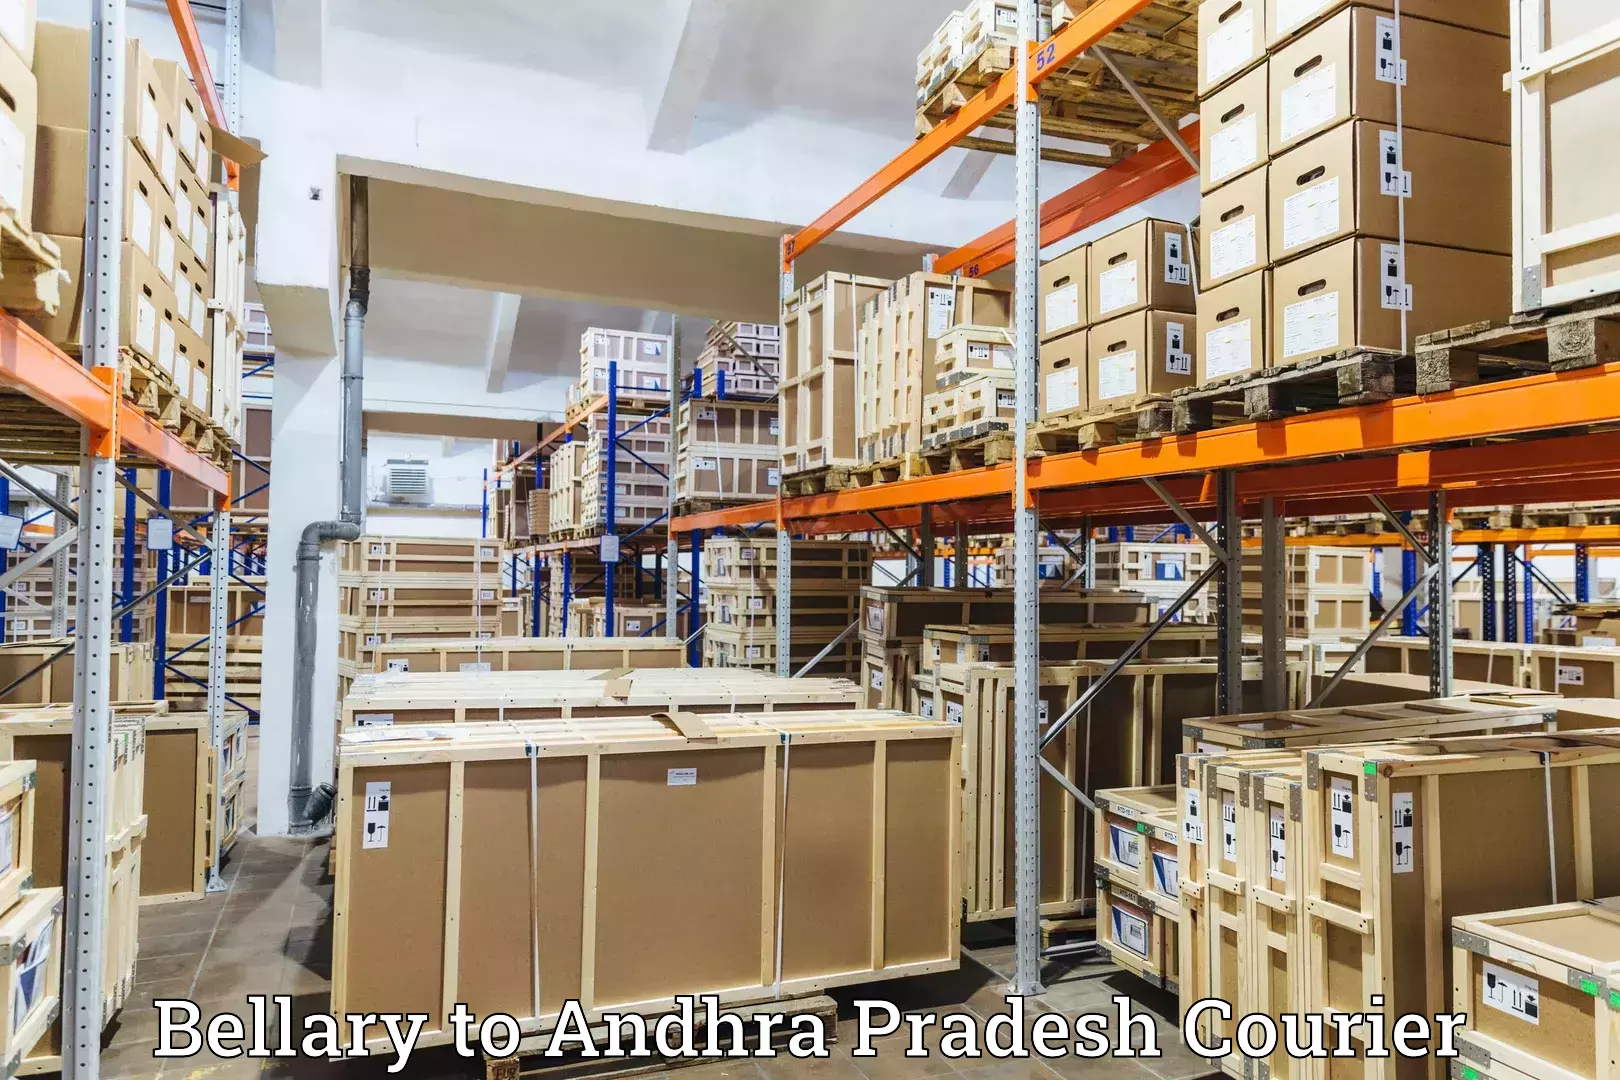 Cargo delivery service Bellary to Andhra Pradesh